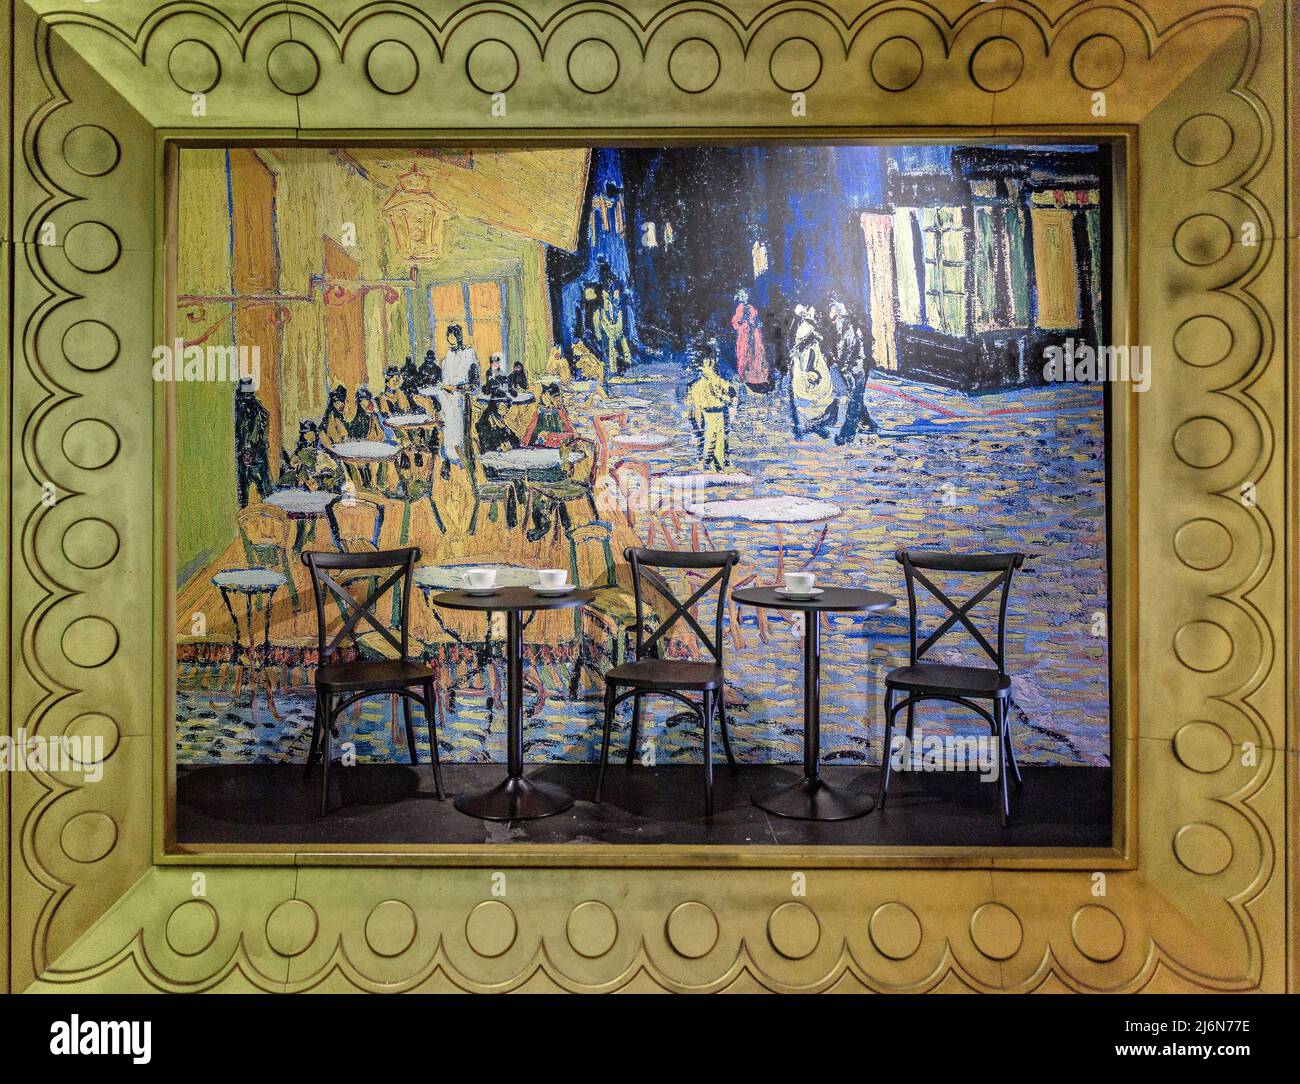 Mostra coinvolgente su Van Gogh nel centro commerciale Las Arenas (Barcellona, Catalogna, Spagna) ESP: Exposición inmersiva sobre Van Gogh en Barcelona Foto Stock